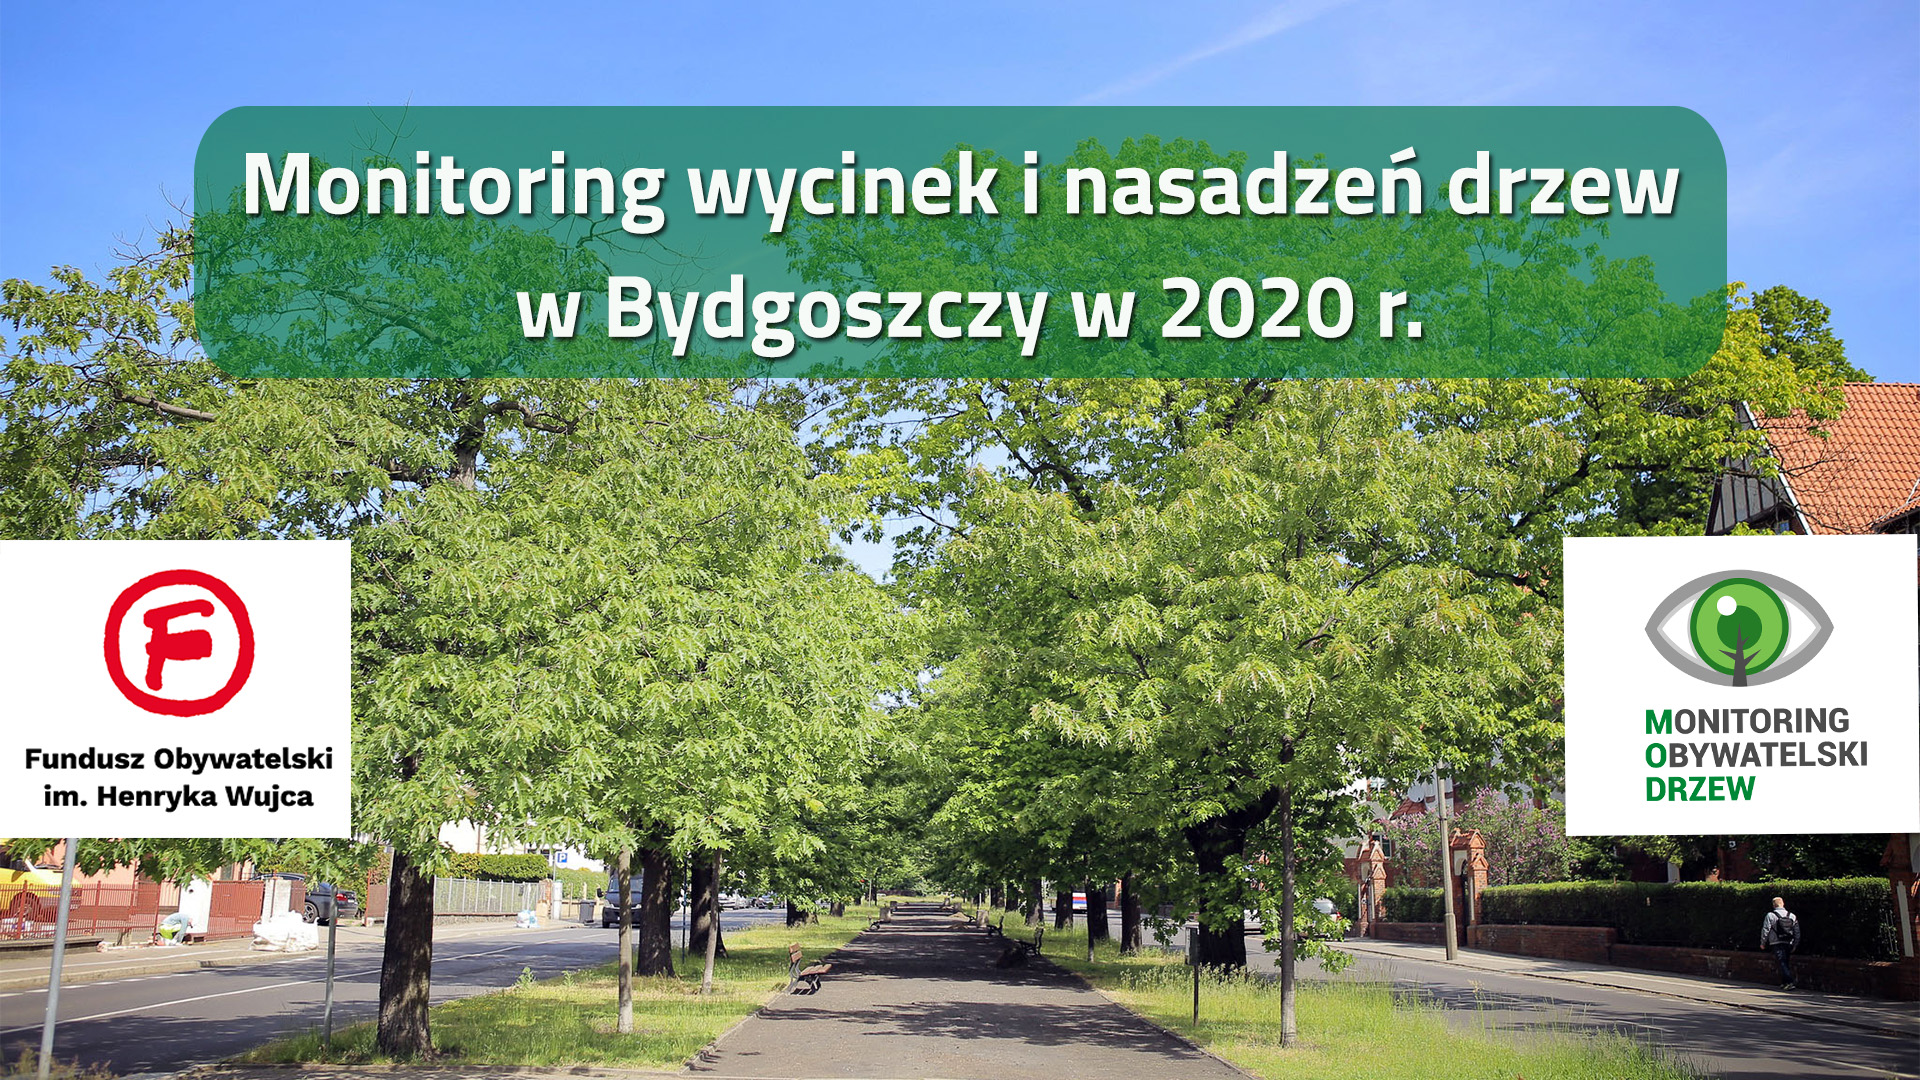 Wycinki i nasadzenia w Bydgoszczy w 2020 r. – podsumowujemy projekt z Funduszu Obywatelskiego